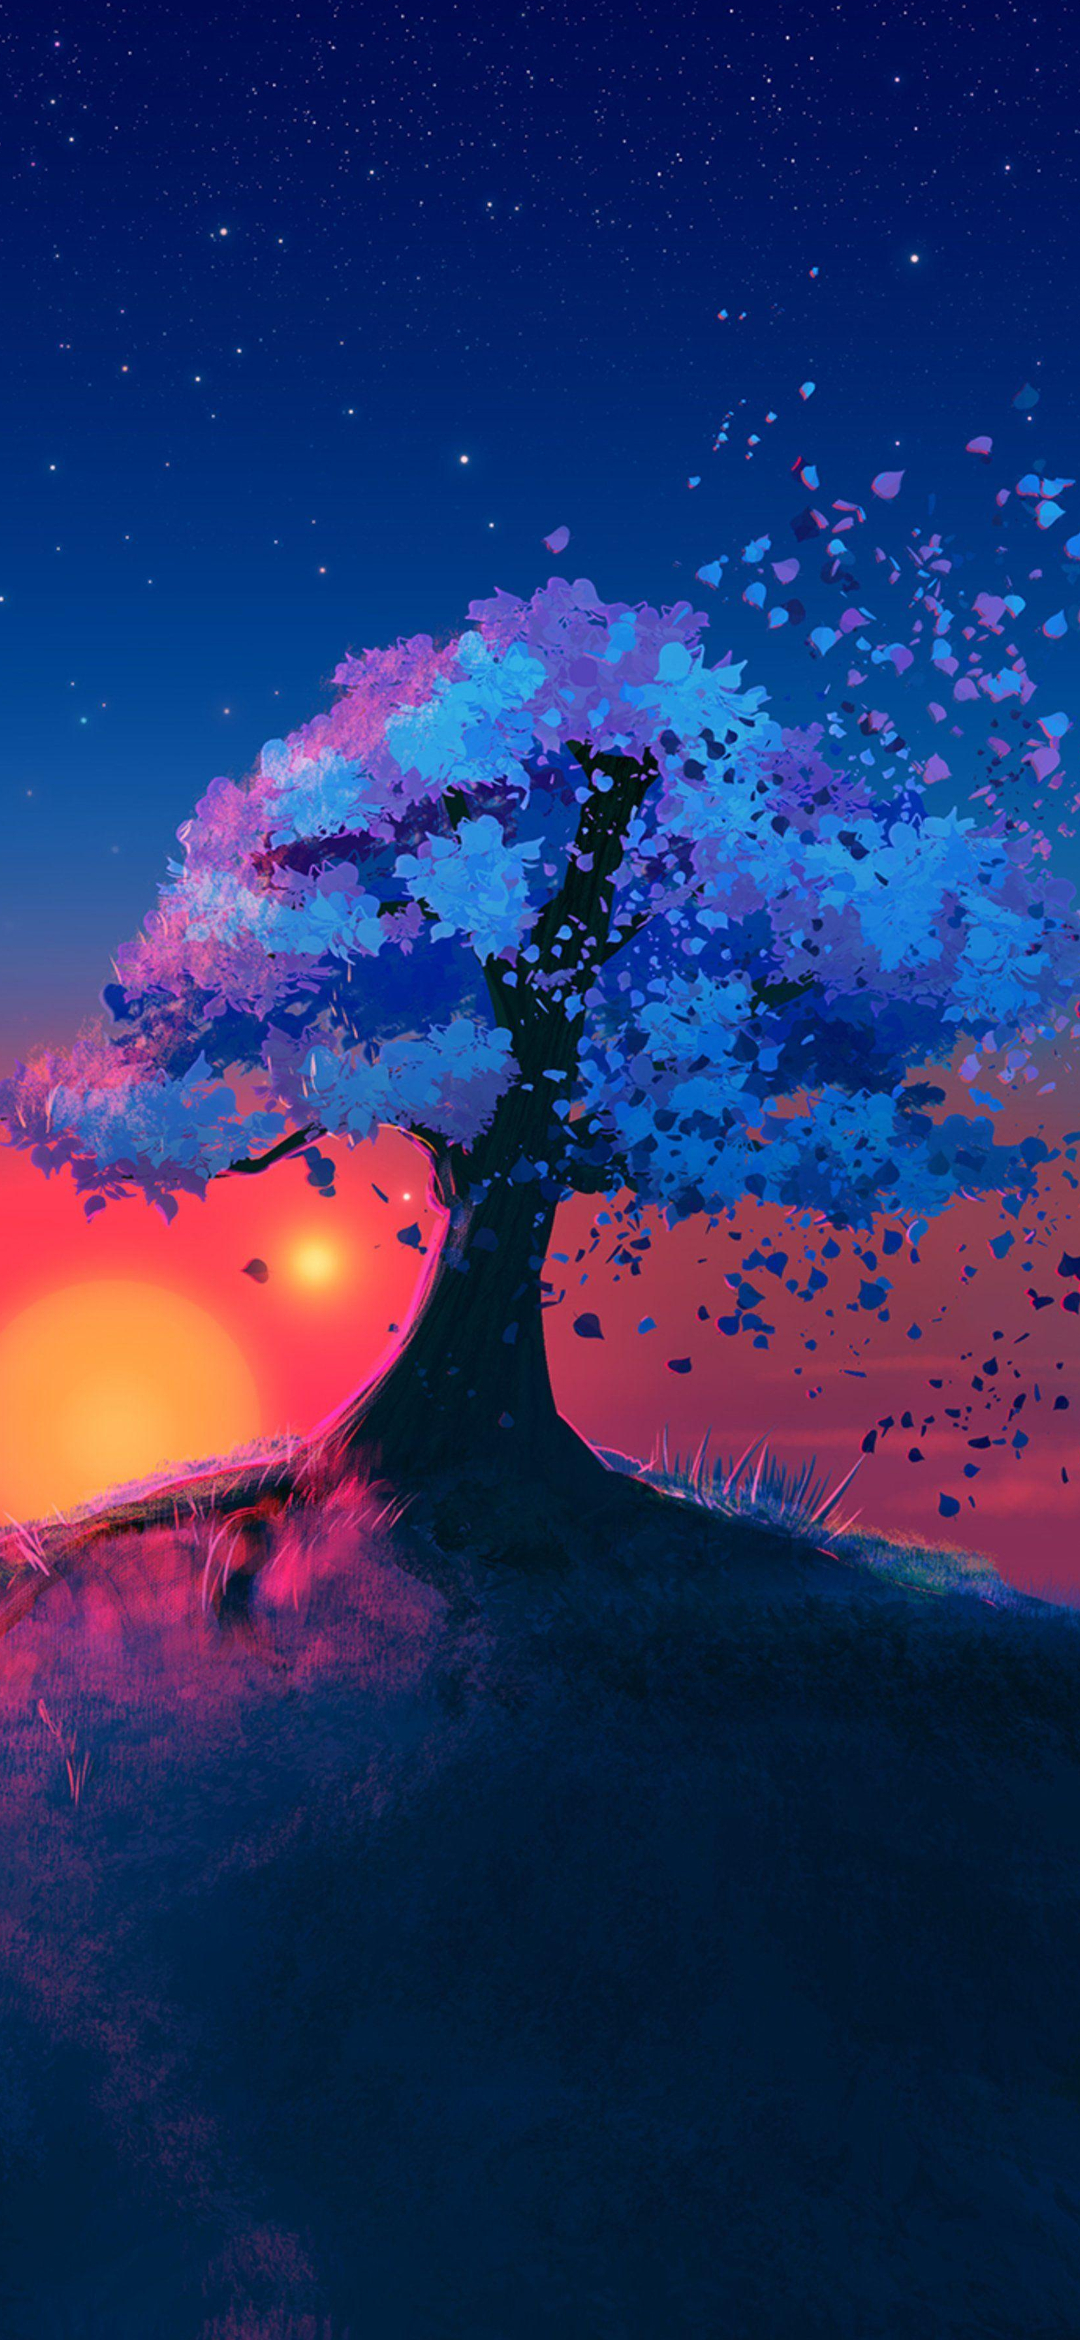 綺麗な木と青の星空のイラスト Find X Android 壁紙 待ち受け Sumaran